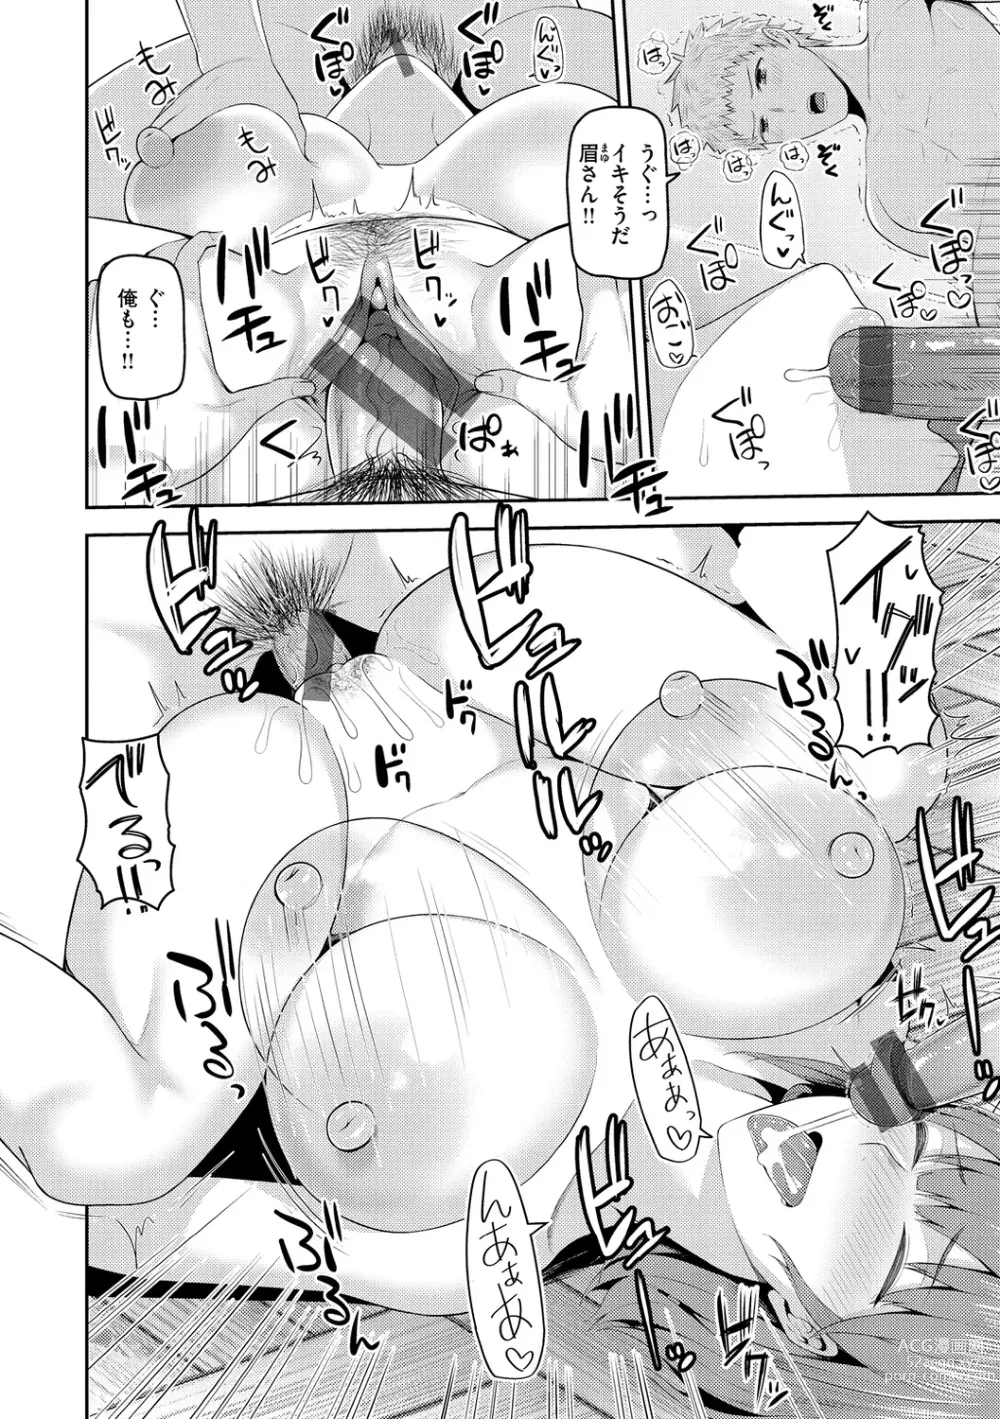 Page 152 of manga Amaete Hoshii no - I want you to spoil me